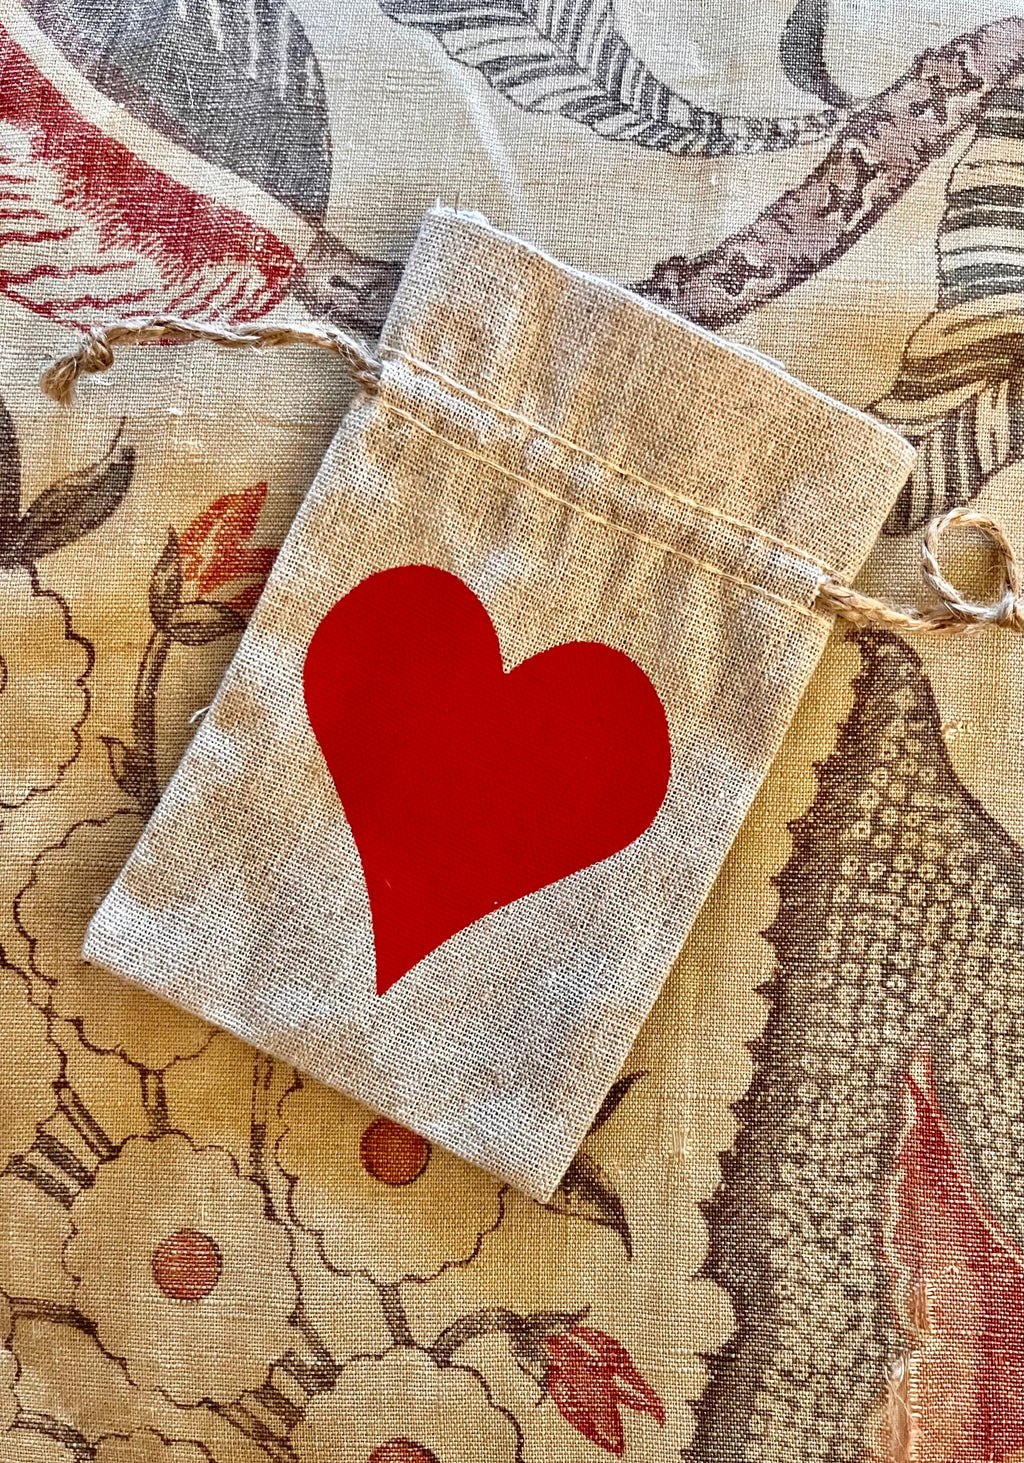 Small Heart Drawstring Bag